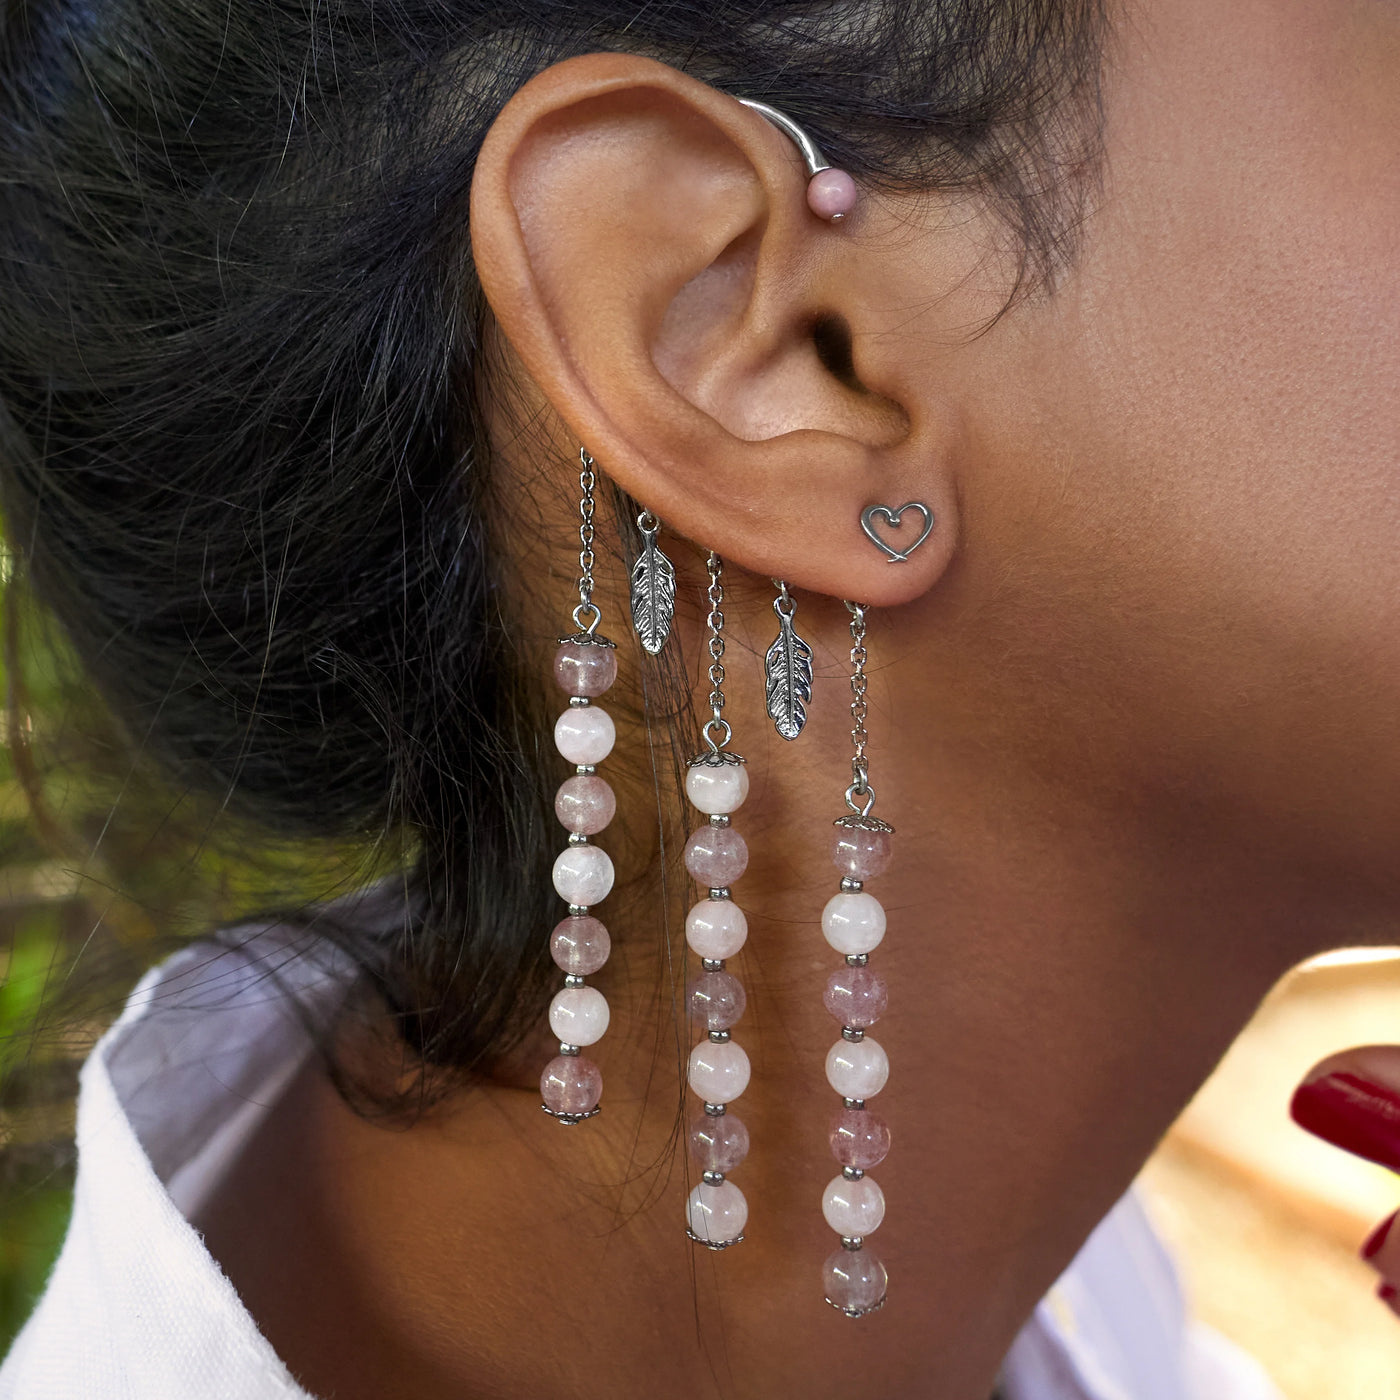 Tour d'oreille Orparima modèle "Amour" porté par Maritza en vue de profil. Boucles d'oreilles coeur. Bijoux dorés au Palladium, fabriqués par une entreprise française.